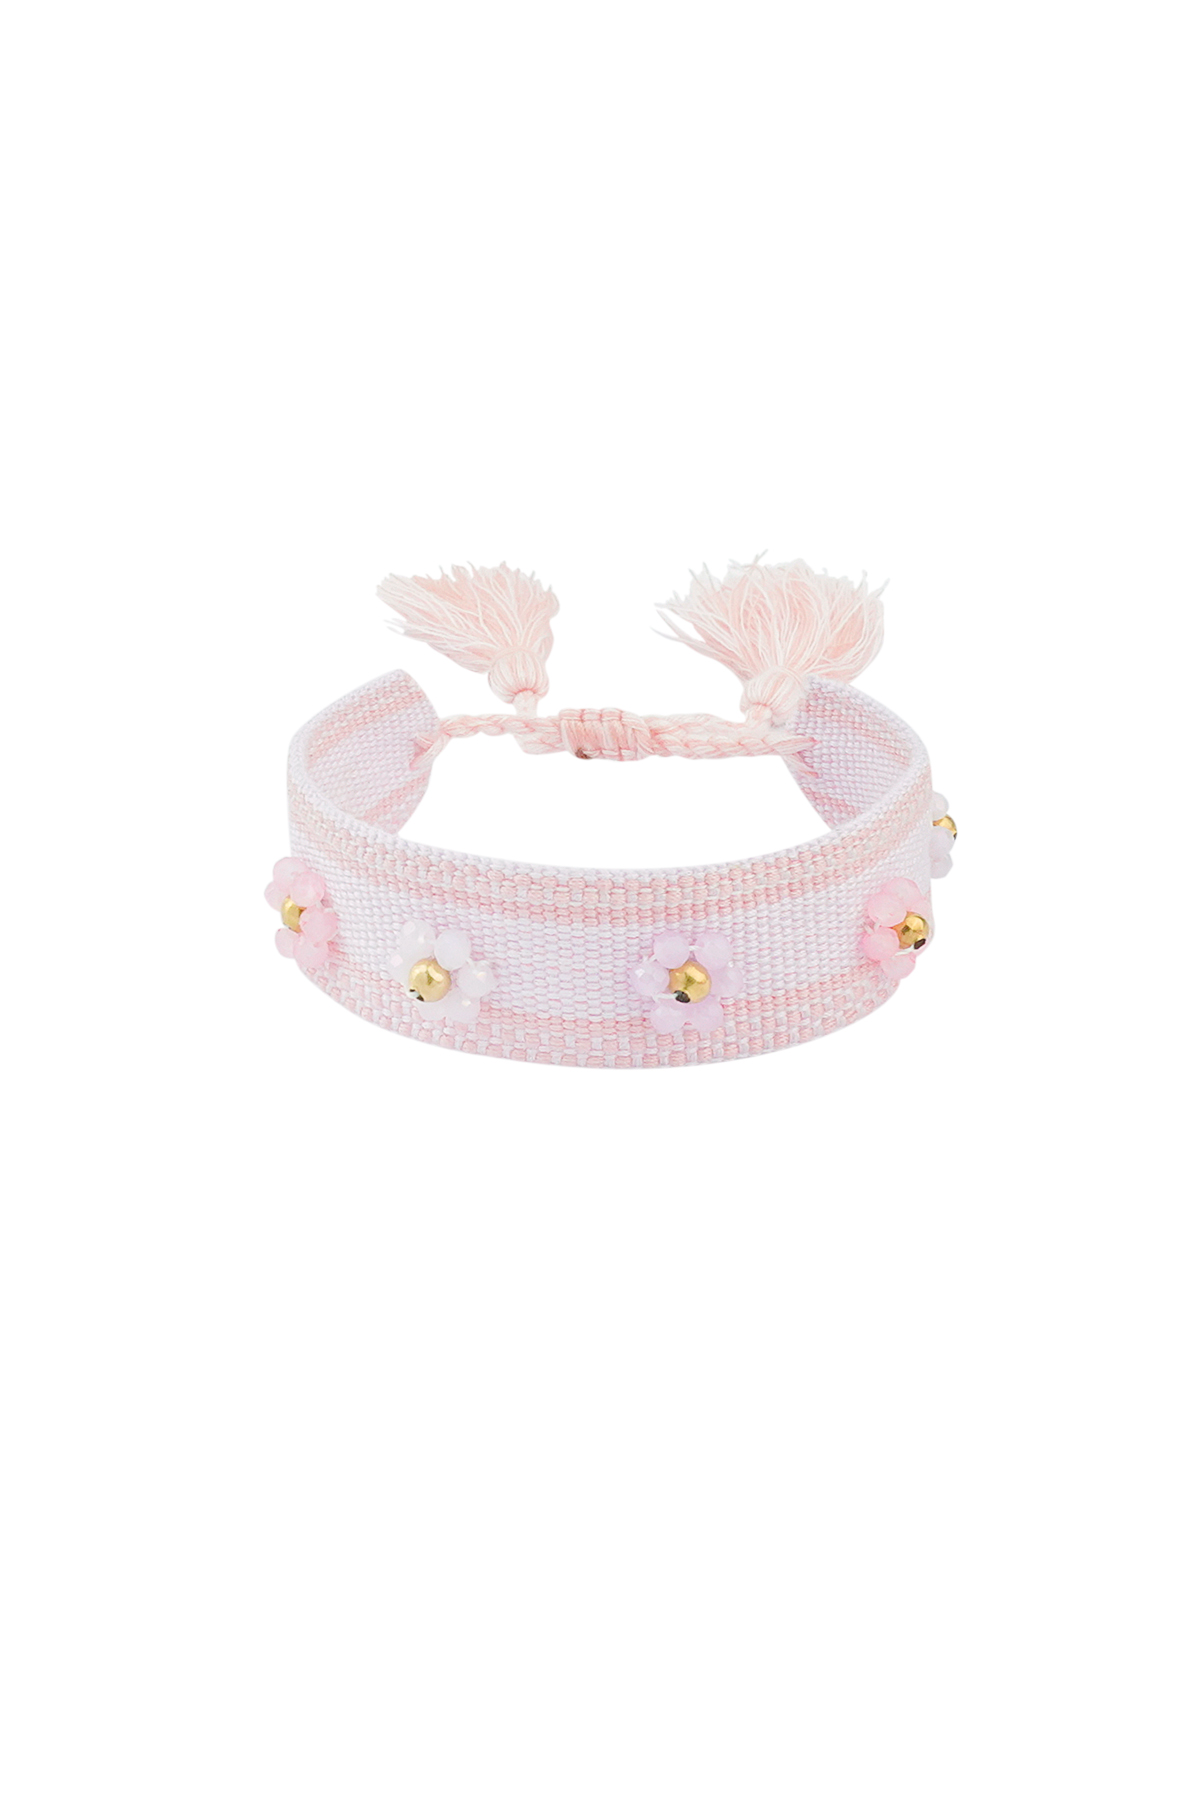 Stoffen armband met bloemen - huidskleur roze h5 